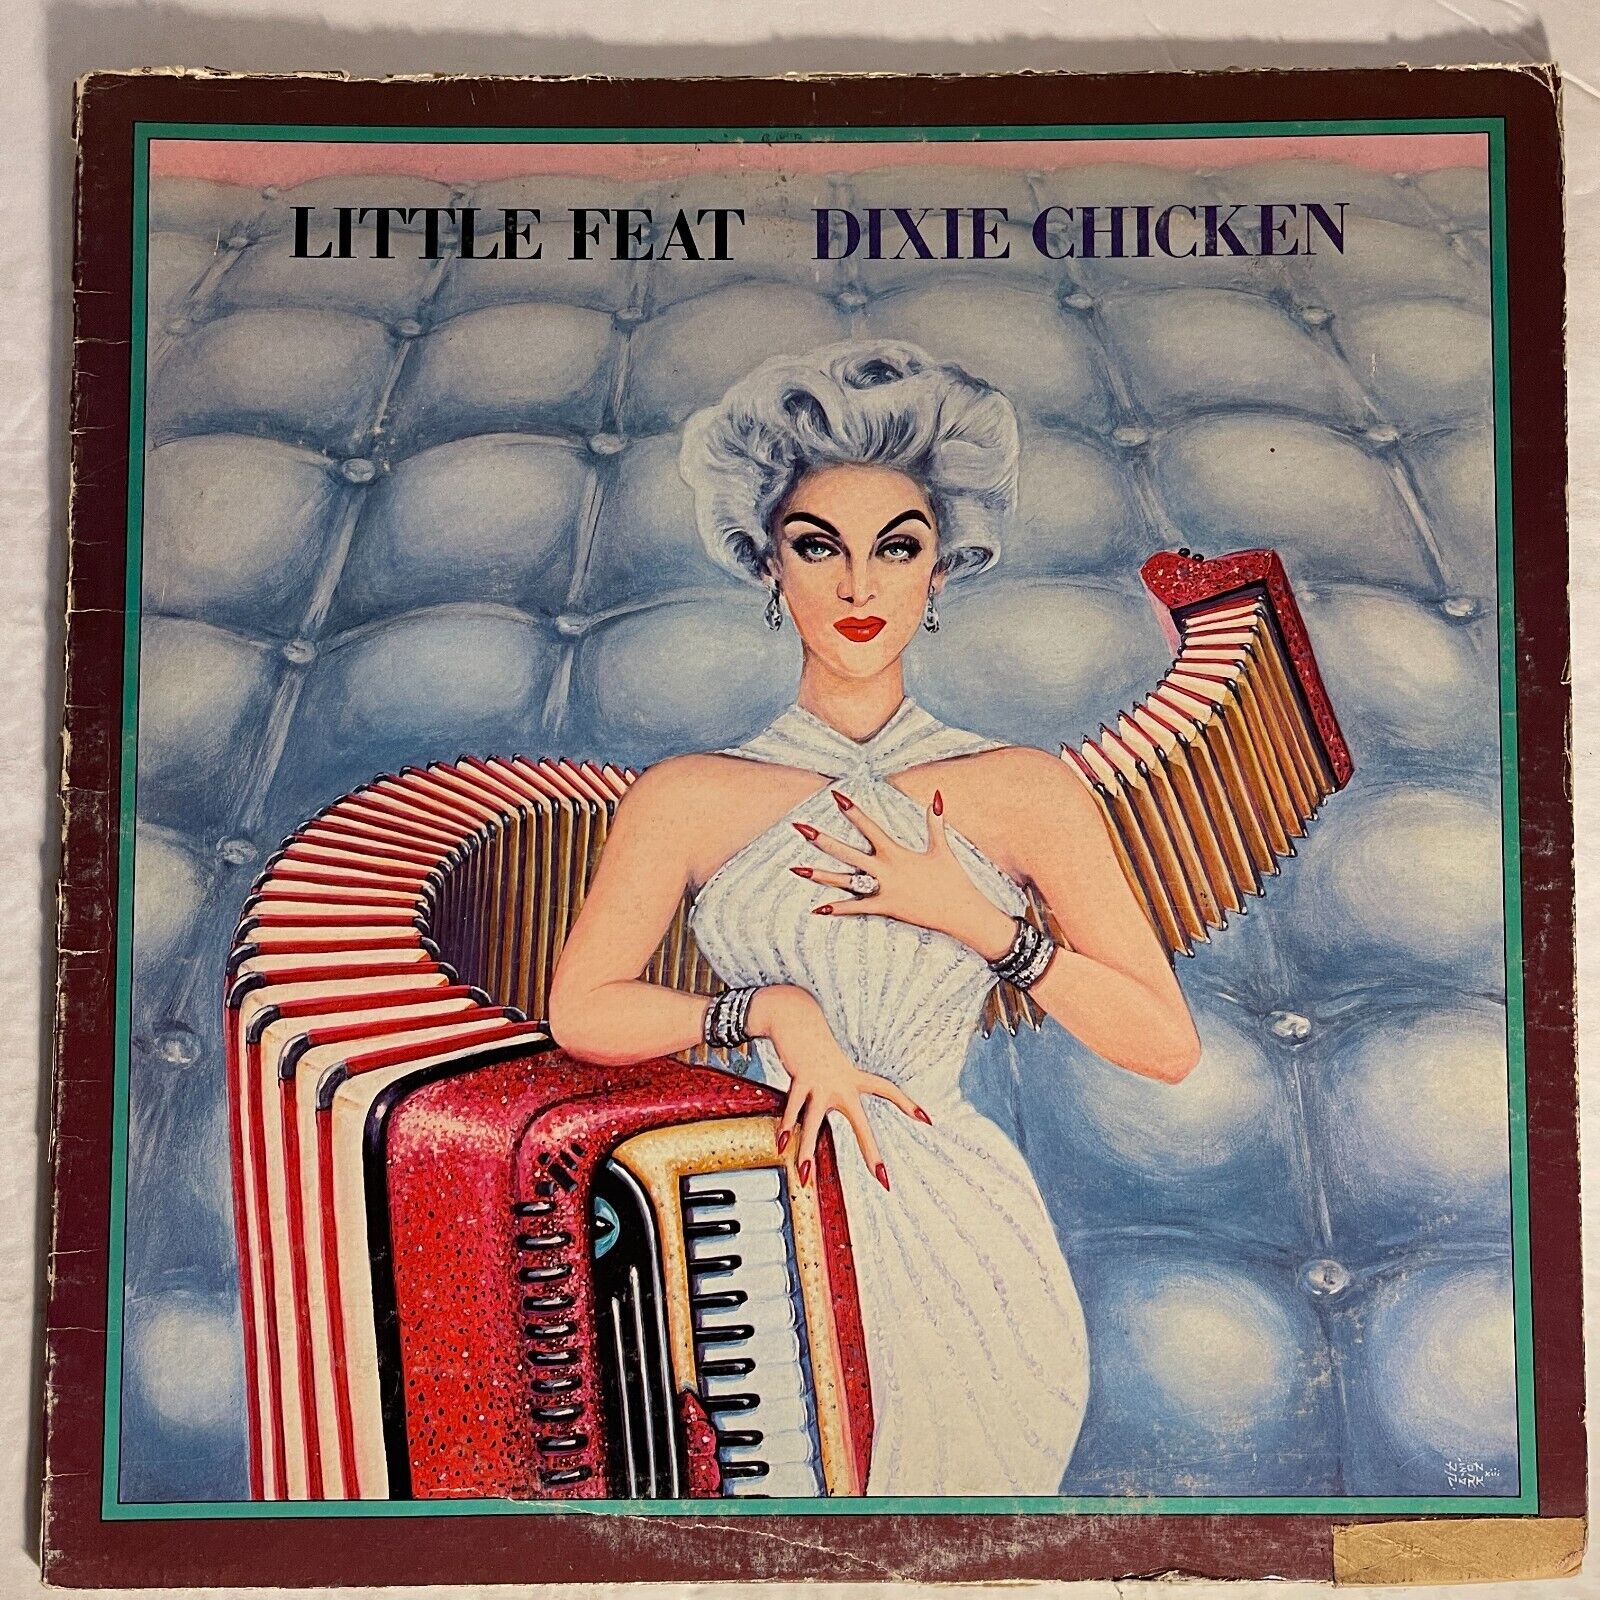 Little Feat ‎– Dixie Chicken Vinyl, LP 1973 Warner Bros. Records ‎– BS 2686